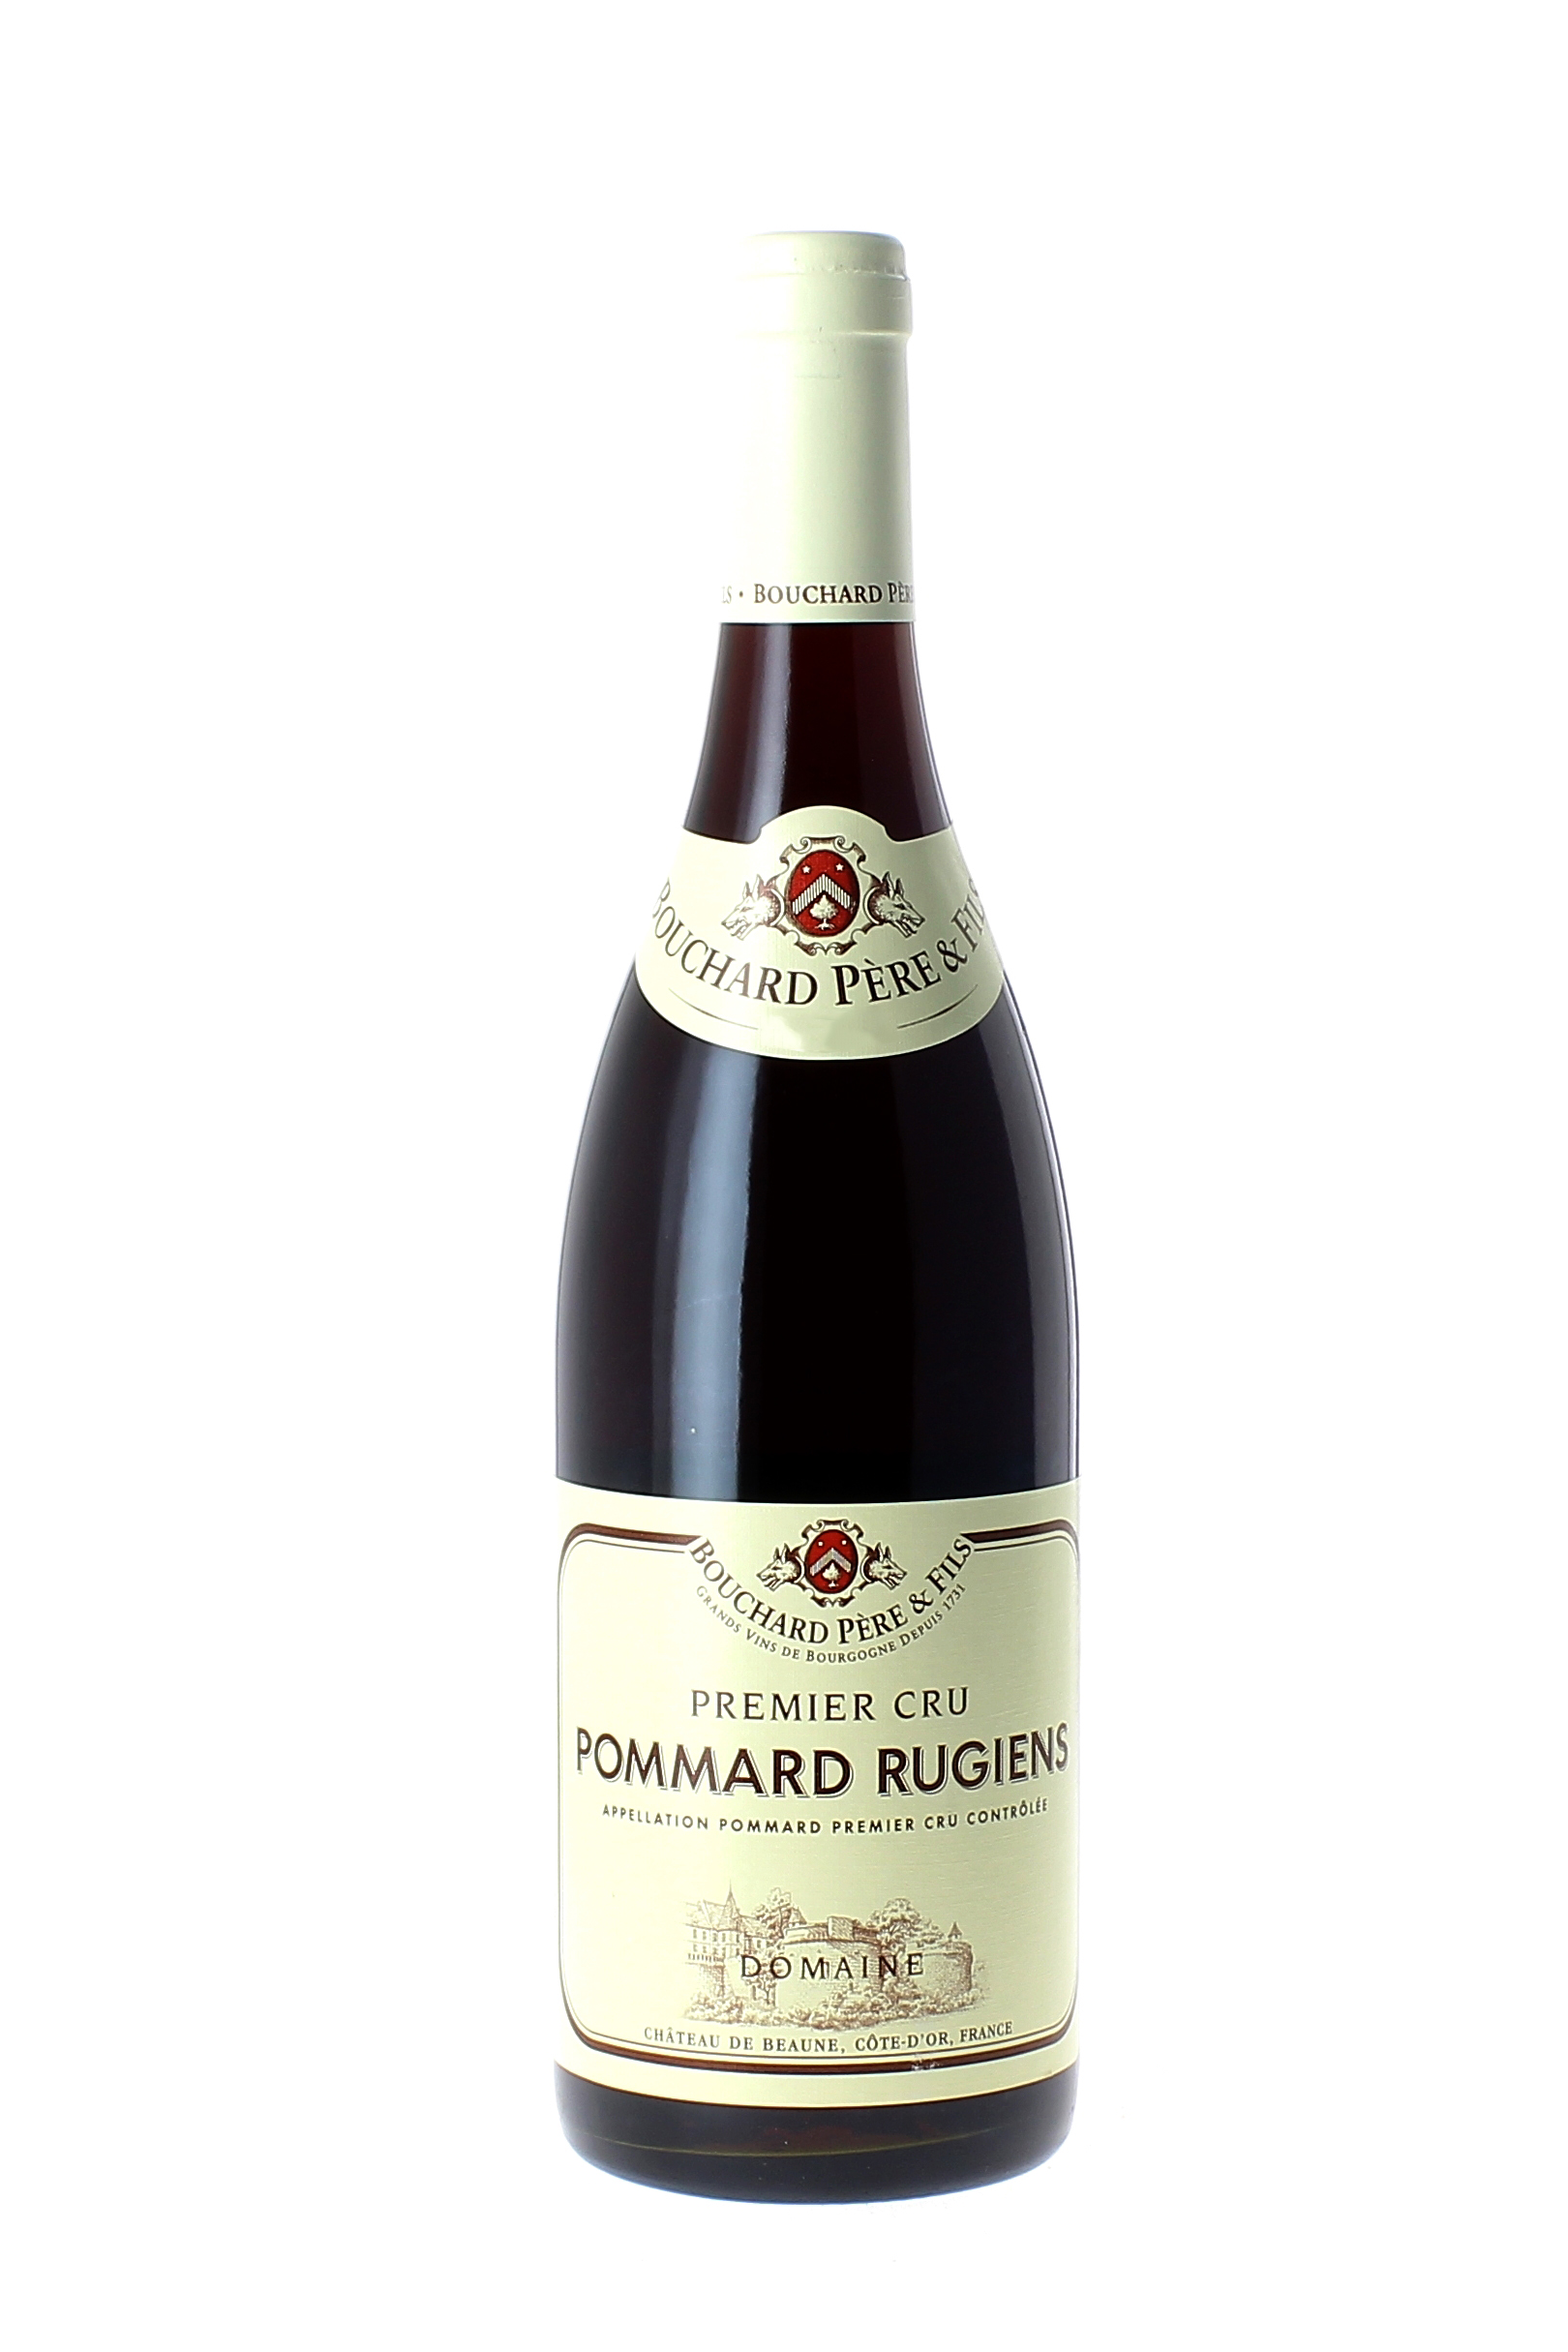 Pommard rugiens 2003  BOUCHARD Pre et fils, Bourgogne rouge